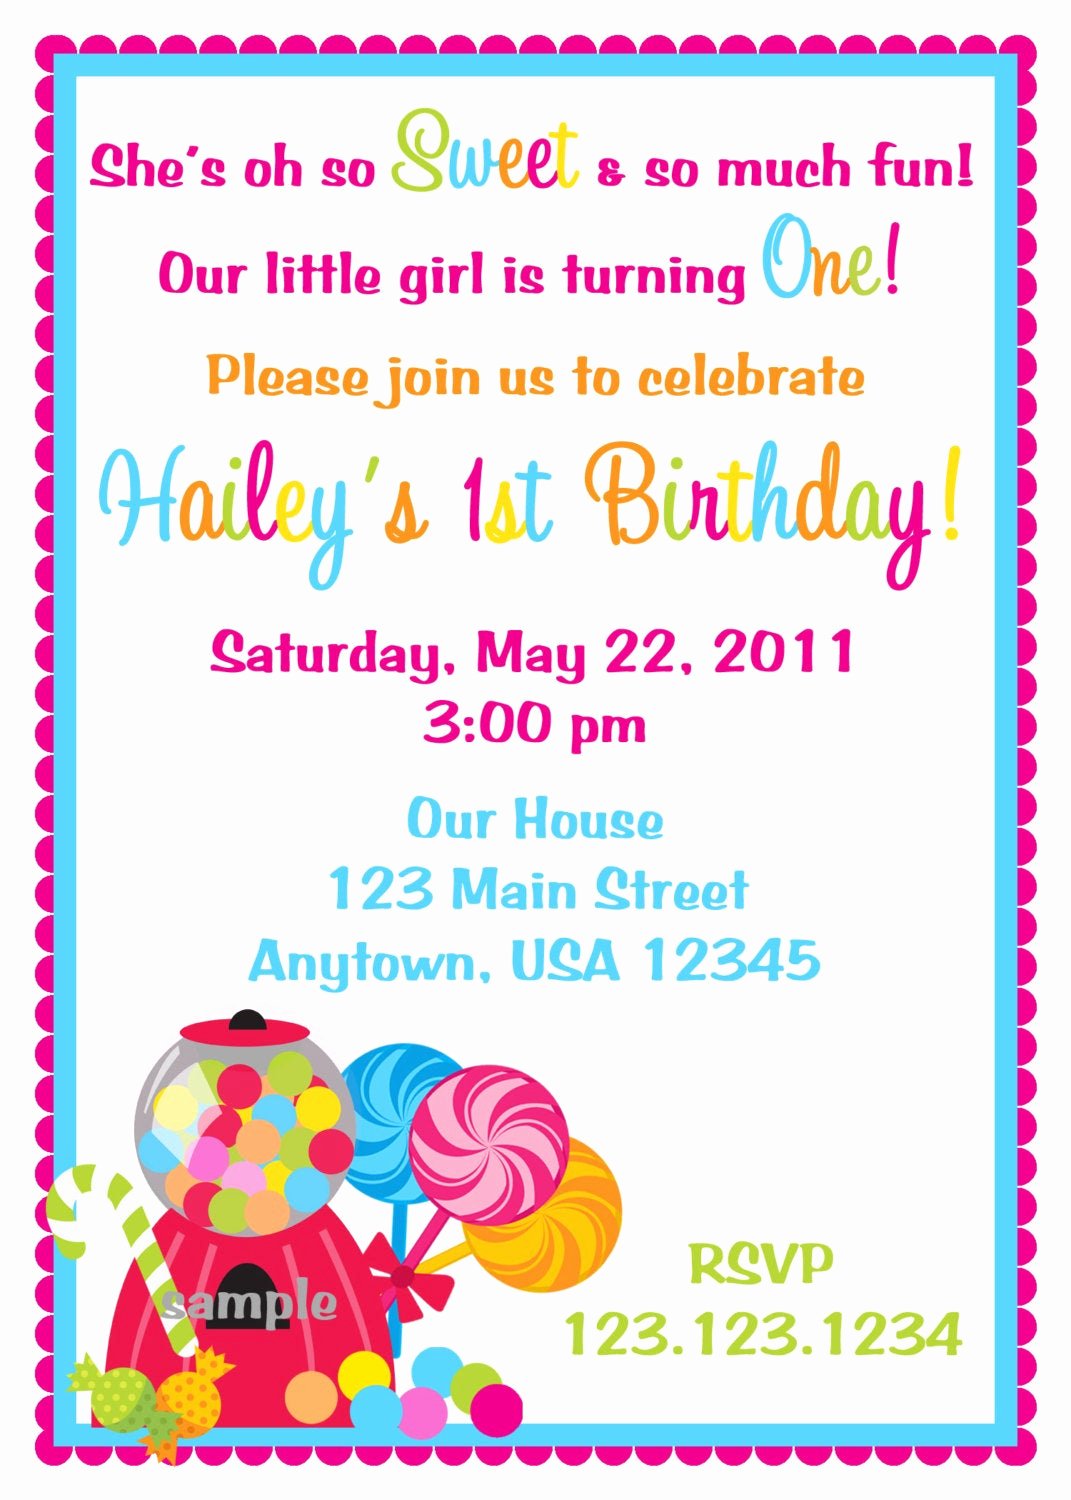 Candyland Birthday Party Invitations Fresh Candy Shoppe Birthday Invitation Candyland by